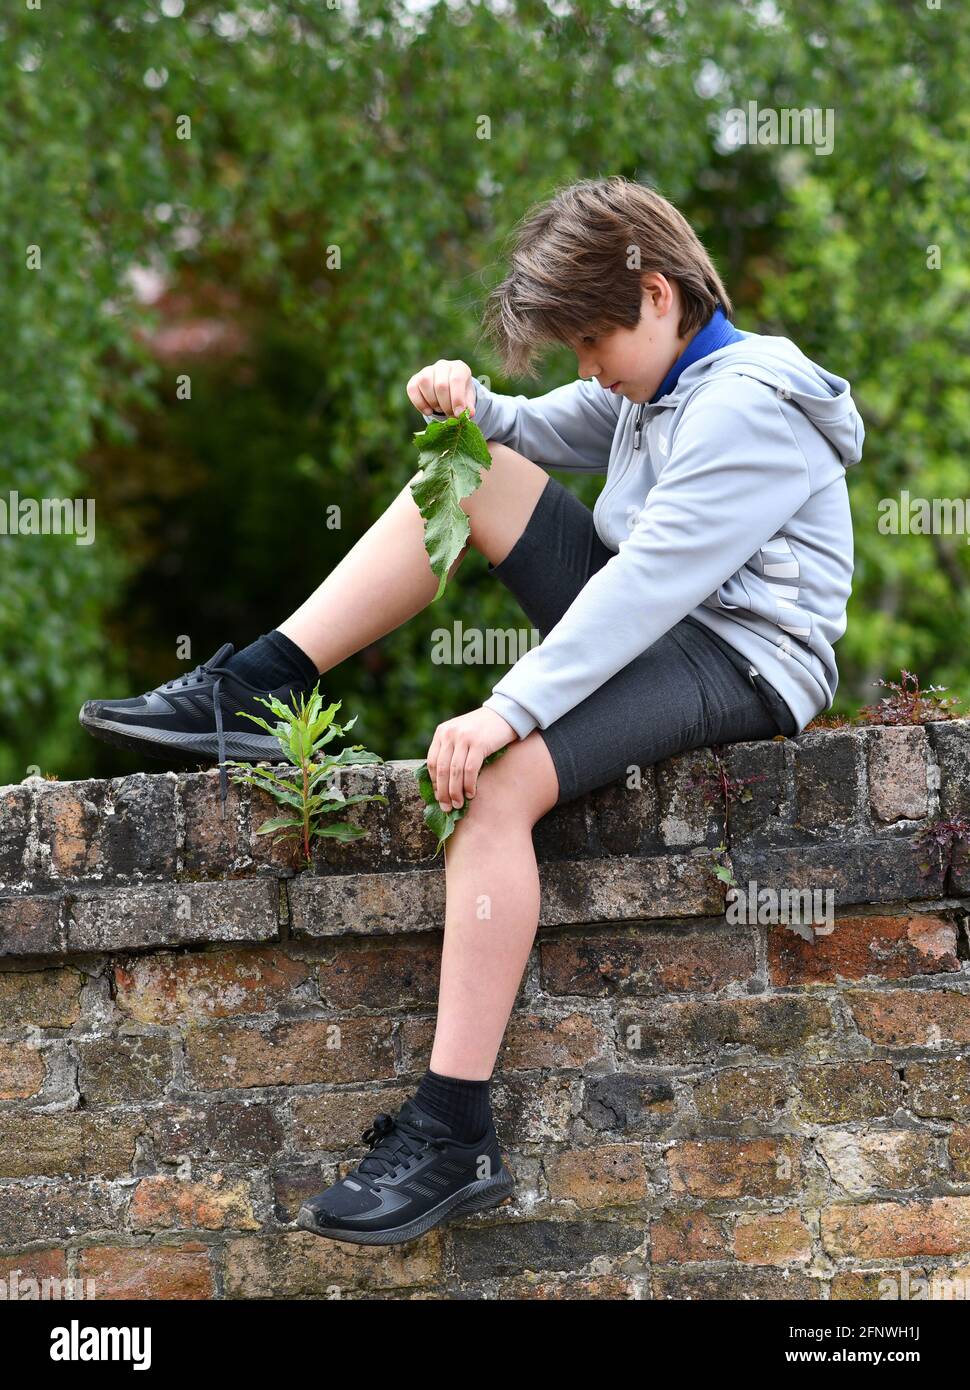 Jeune garçon frottant son genou avec une feuille de quai à traitez une piqûre d'ortie Banque D'Images